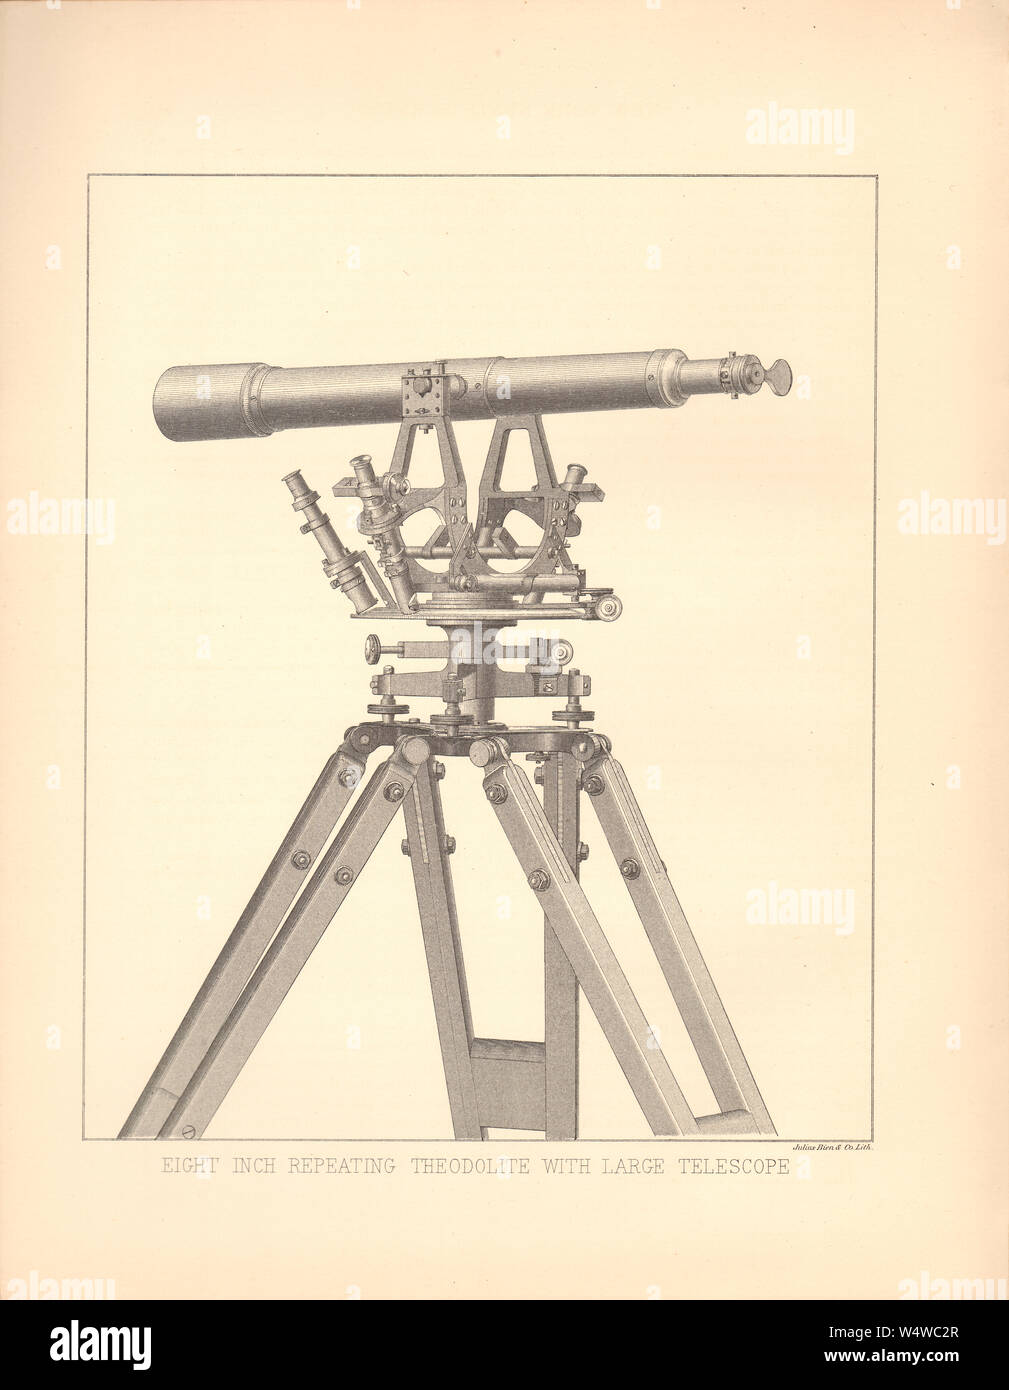 Repetición de ocho pulgadas teodolito con gran telescopio que se utilizan en la medición de ángulos horizontales - imagen mostrando Anticuaria agrimensor herramientas del siglo XIX. Foto de stock